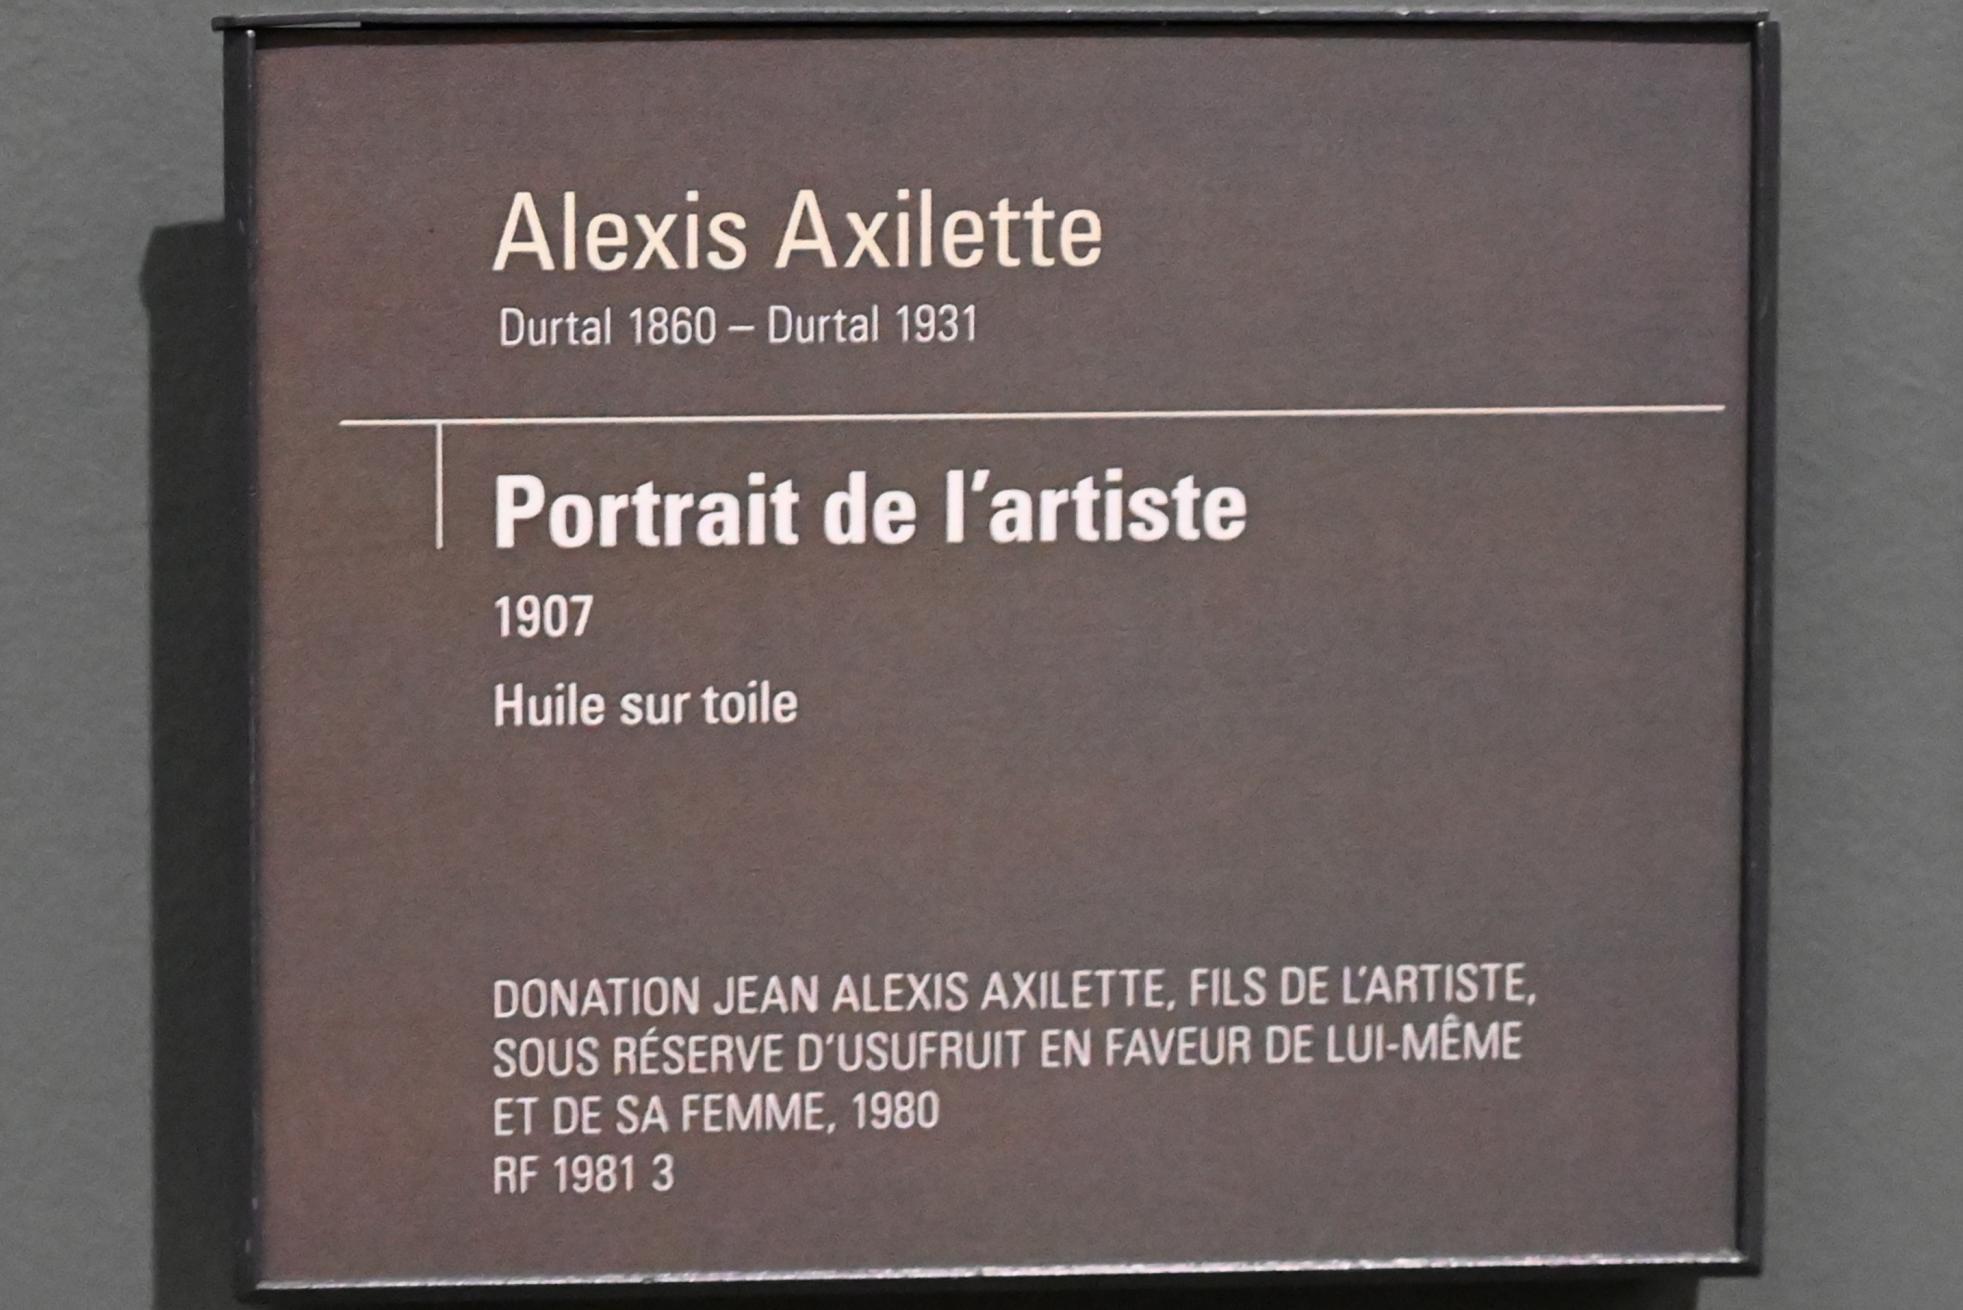 Alexis Axilette (1907), Selbstporträt, Paris, Musée d’Orsay, 1907, Bild 2/2